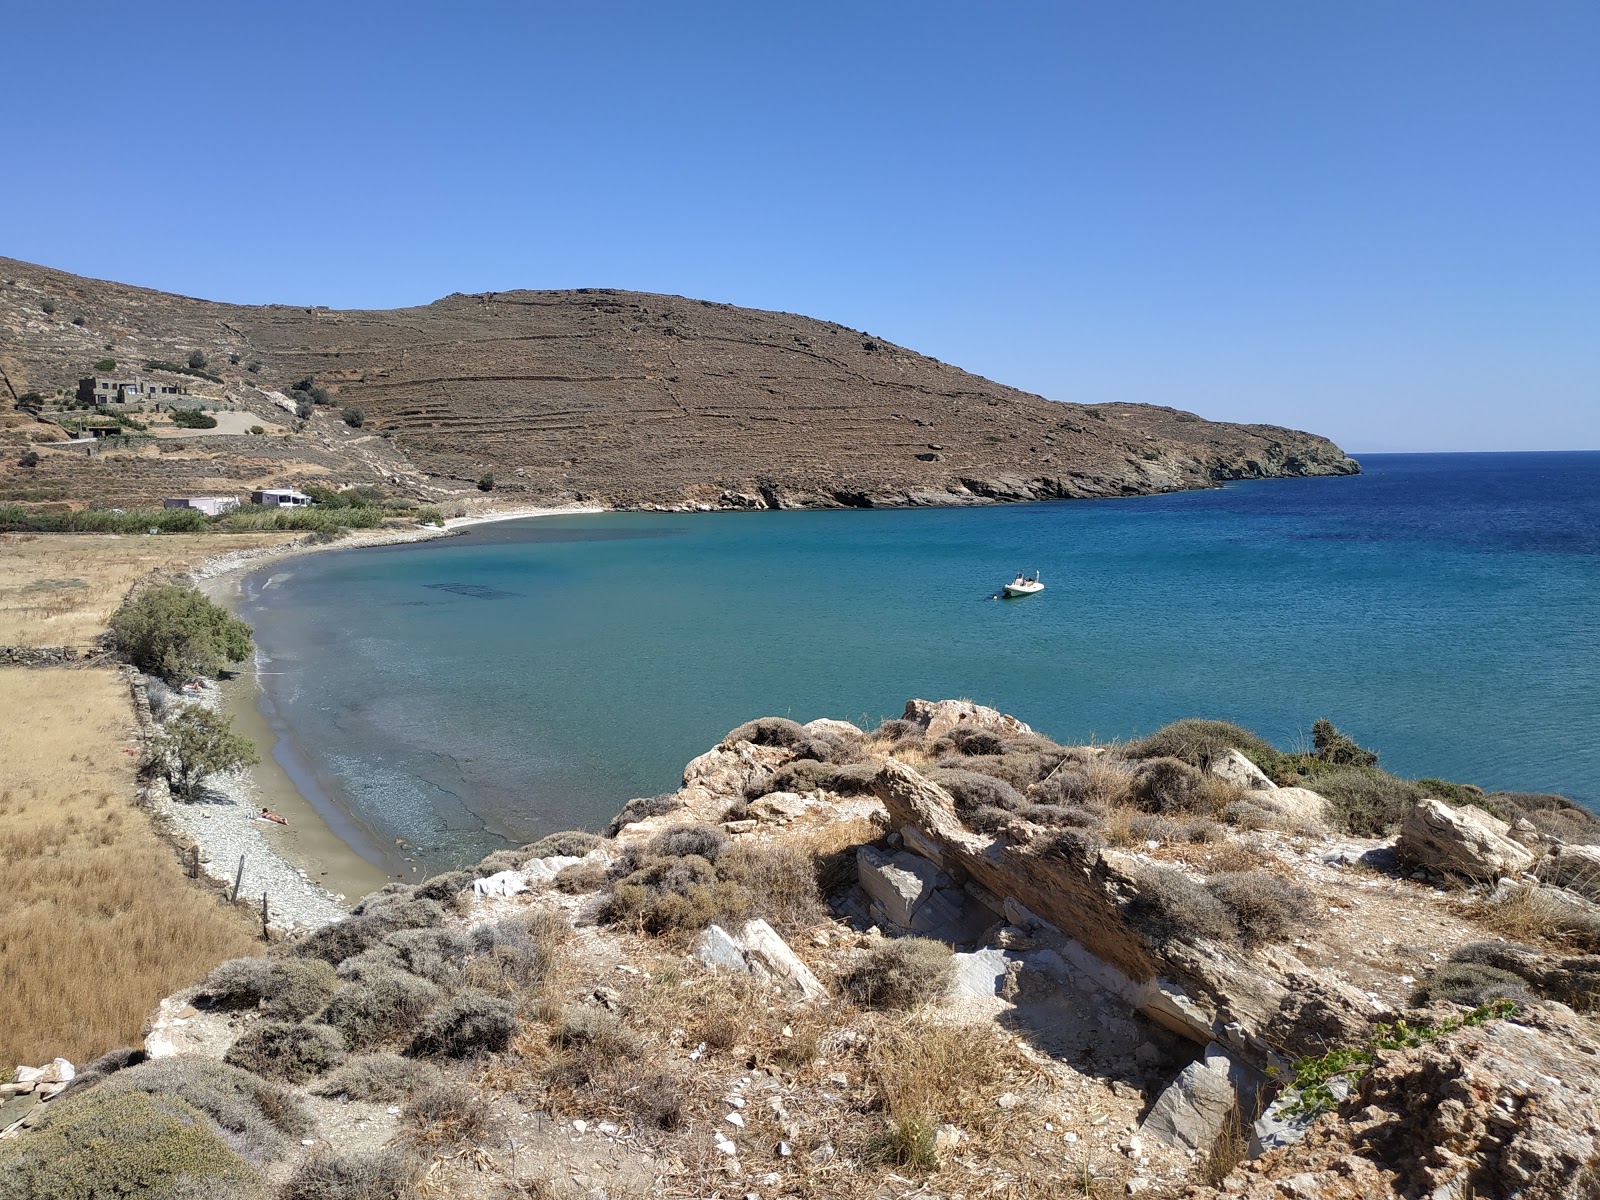 Agios Petros beach'in fotoğrafı gri kum ve çakıl yüzey ile